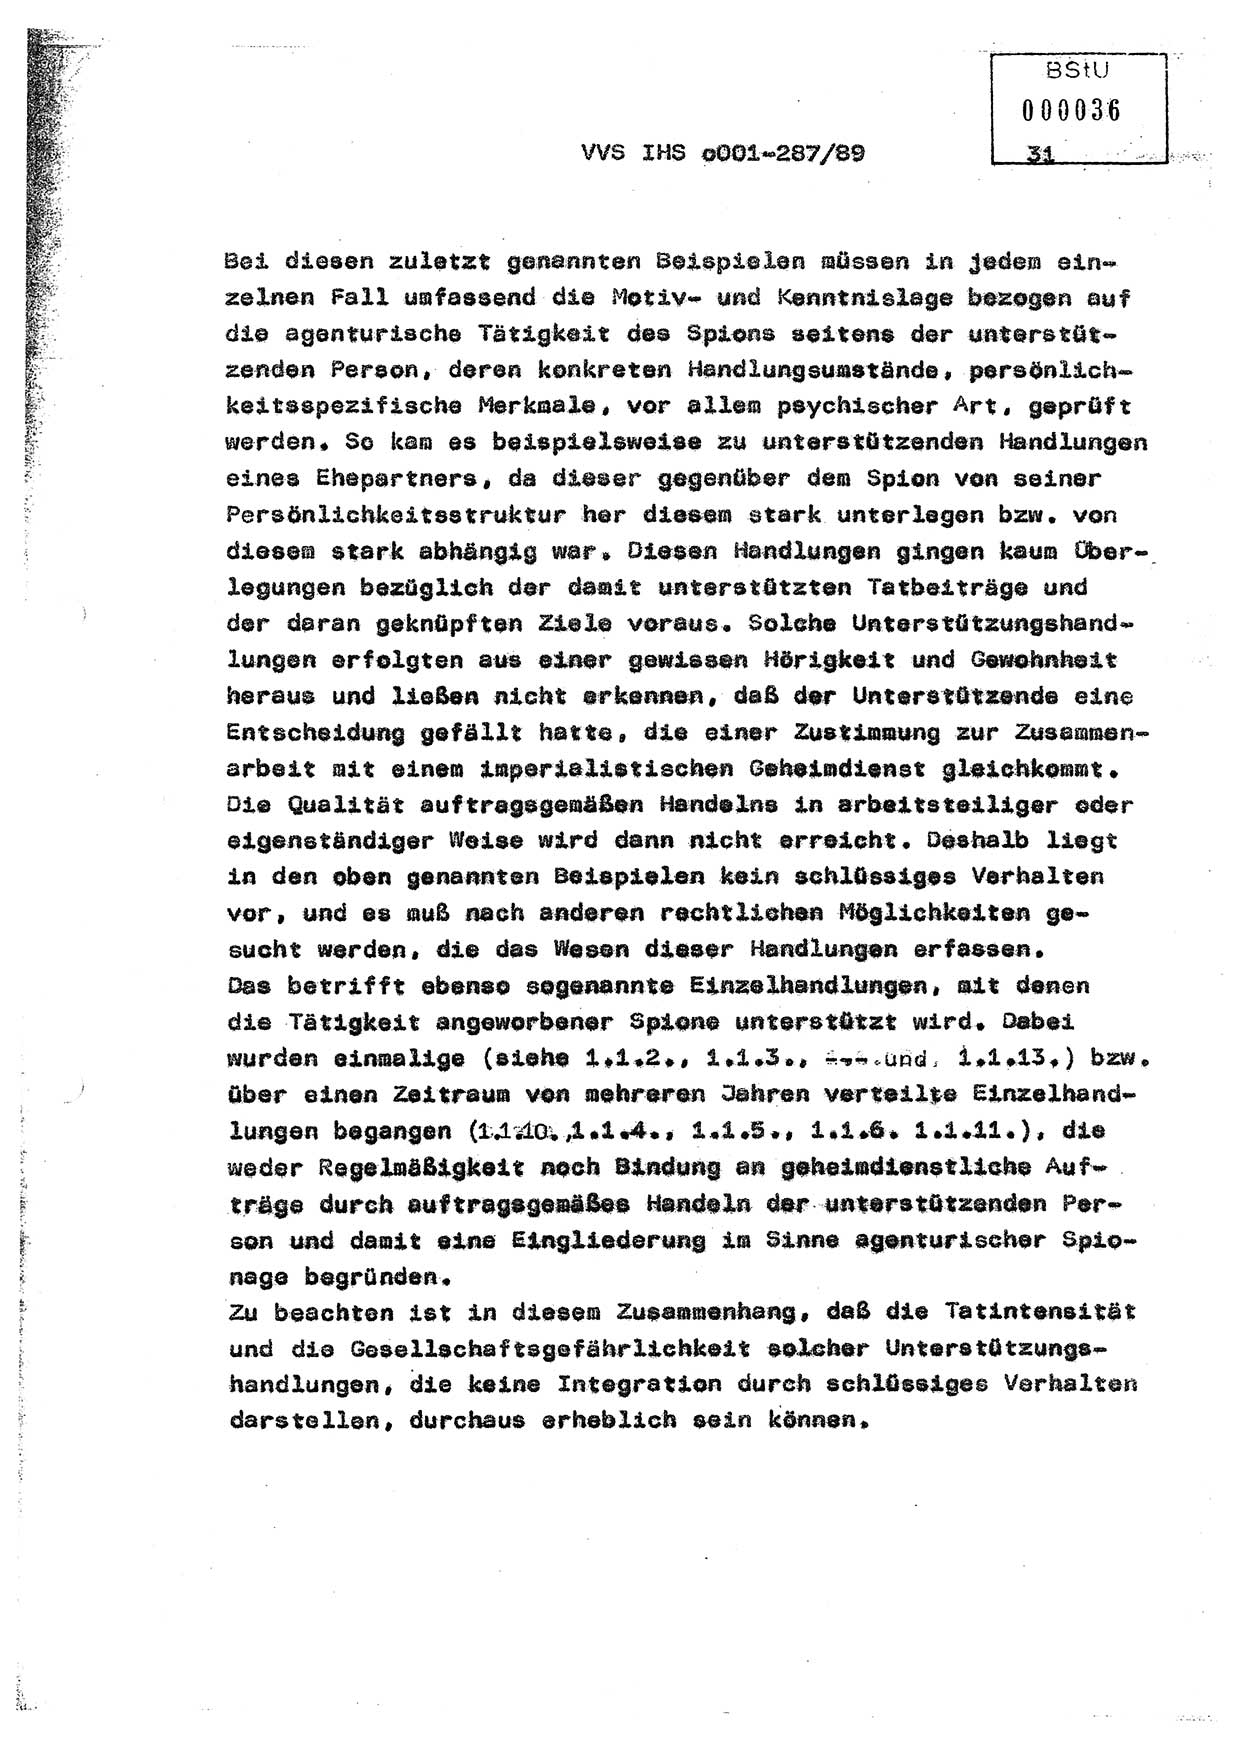 Diplomarbeit, Offiziersschüler Harald Wabst (HA Ⅸ/1), Ministerium für Staatssicherheit (MfS) [Deutsche Demokratische Republik (DDR)], Juristische Hochschule (JHS), Vertrauliche Verschlußsache (VVS) o001-287/89, Potsdam 1989, Seite 31 (Dipl.-Arb. MfS DDR JHS VVS o001-287/89 1989, S. 31)